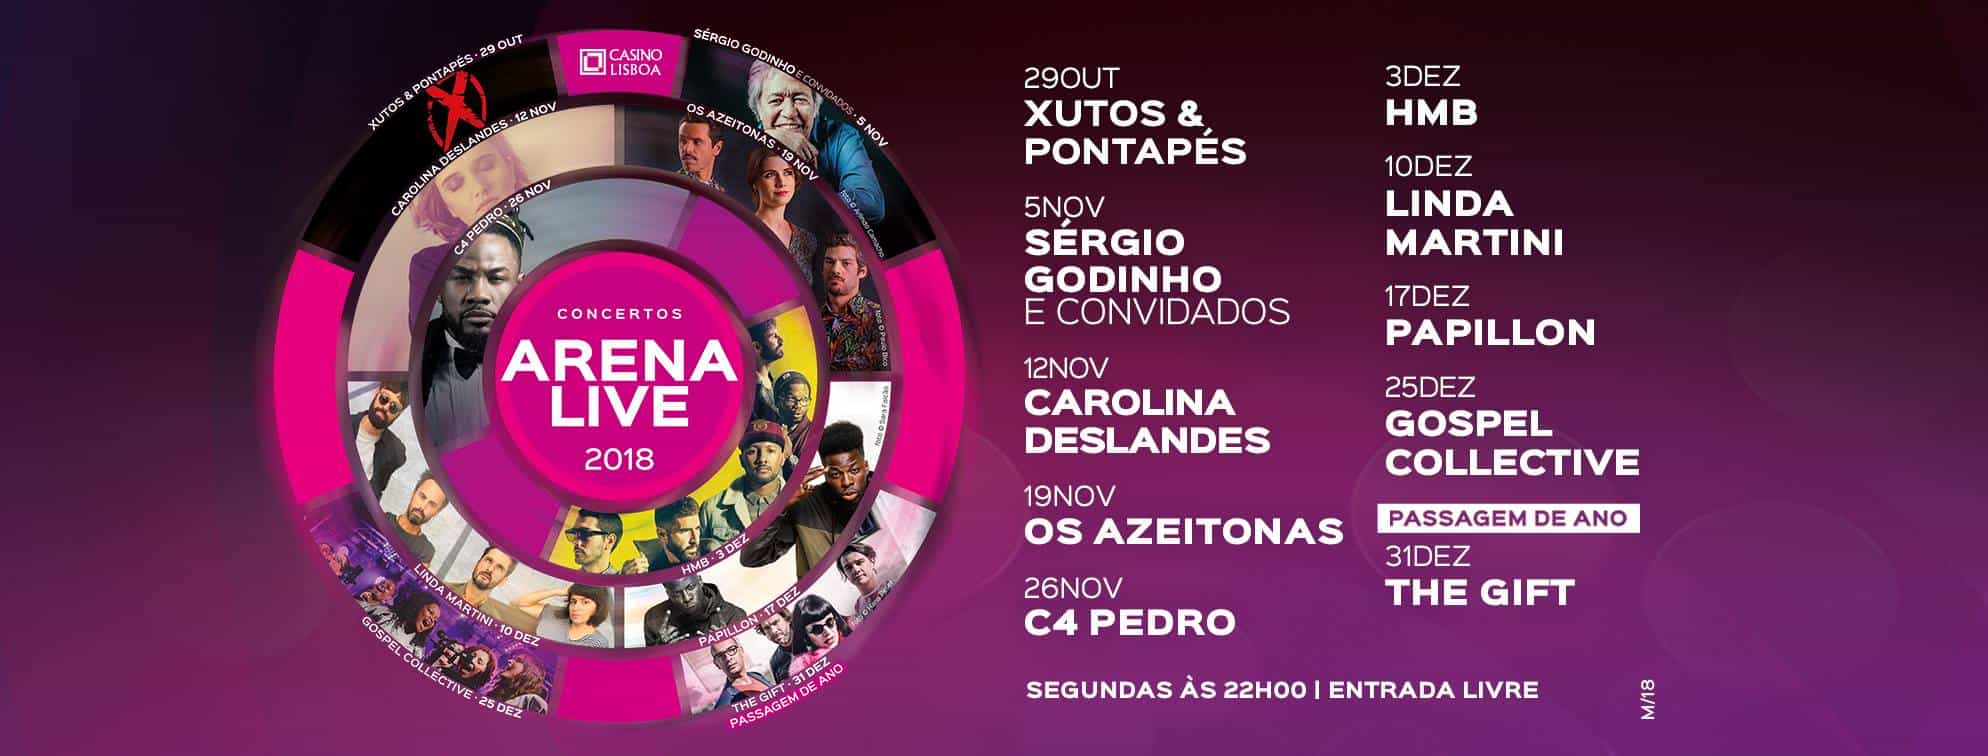 CONCERTOS ARENA LIVE 2018 ESTÃO DE VOLTA AO CASINO LISBOA